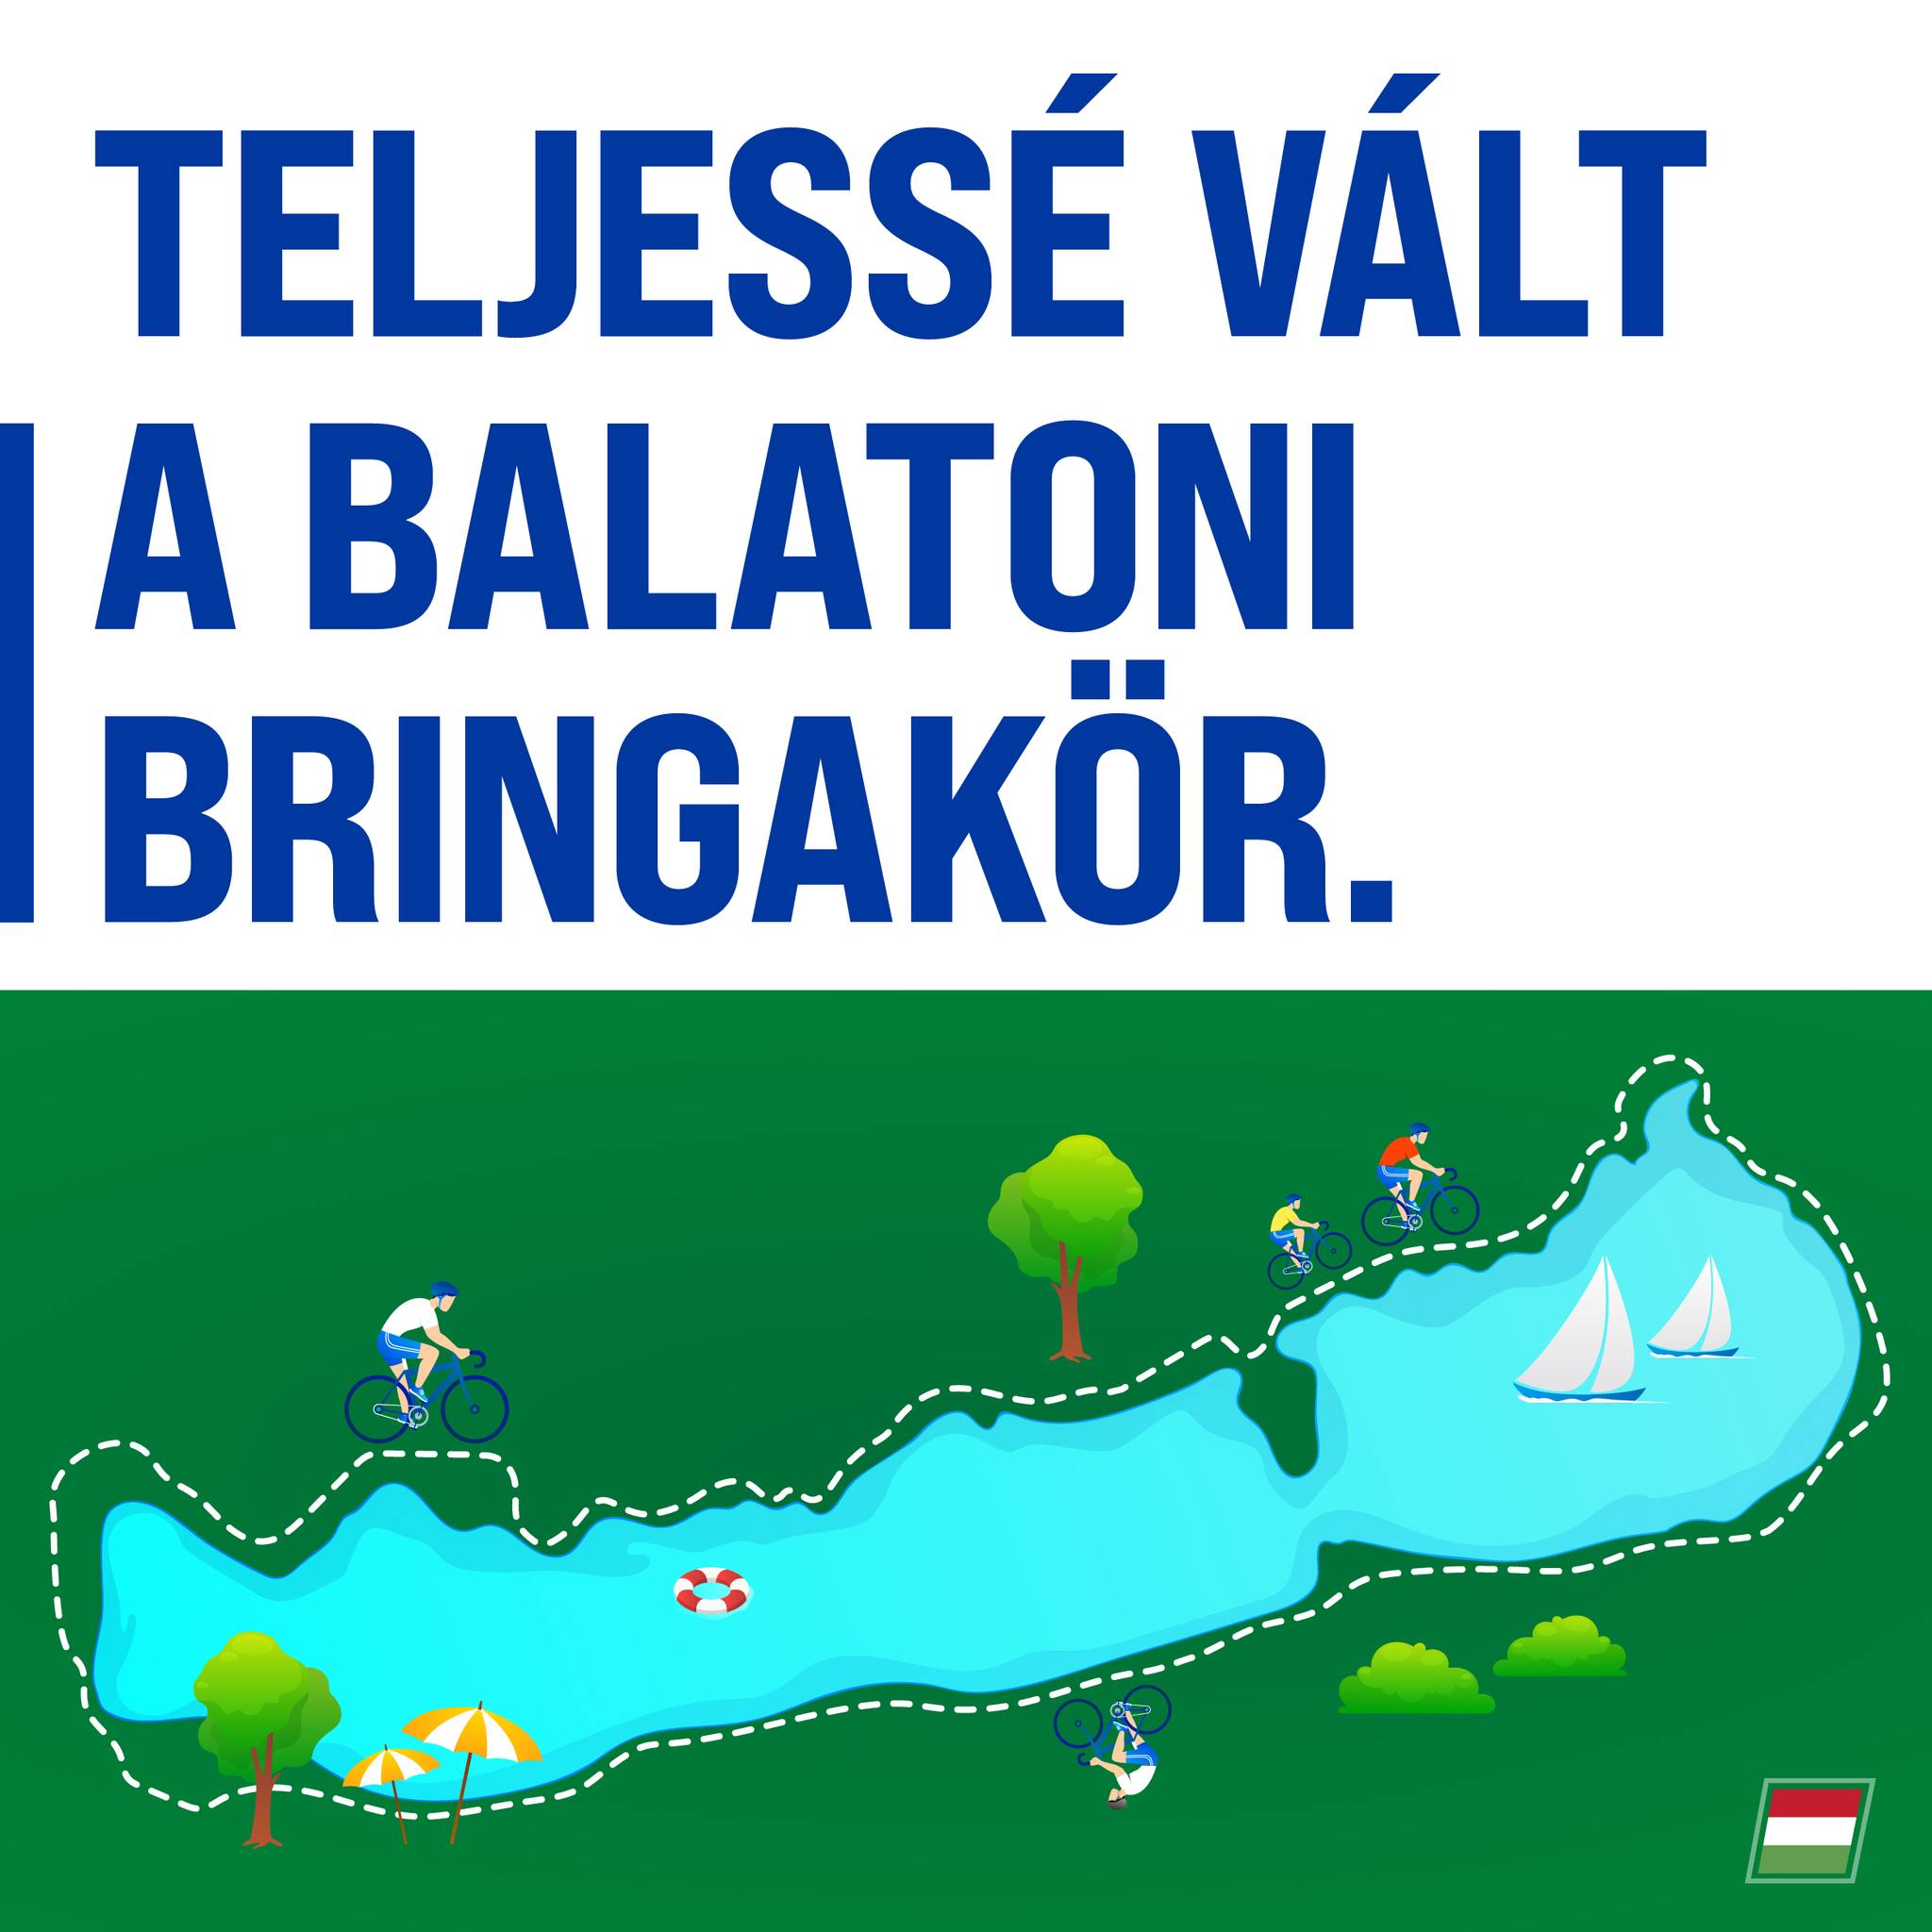 Két keréken a magyar tenger körül – átadtuk a Balatoni Bringakör utolsó szakaszát.